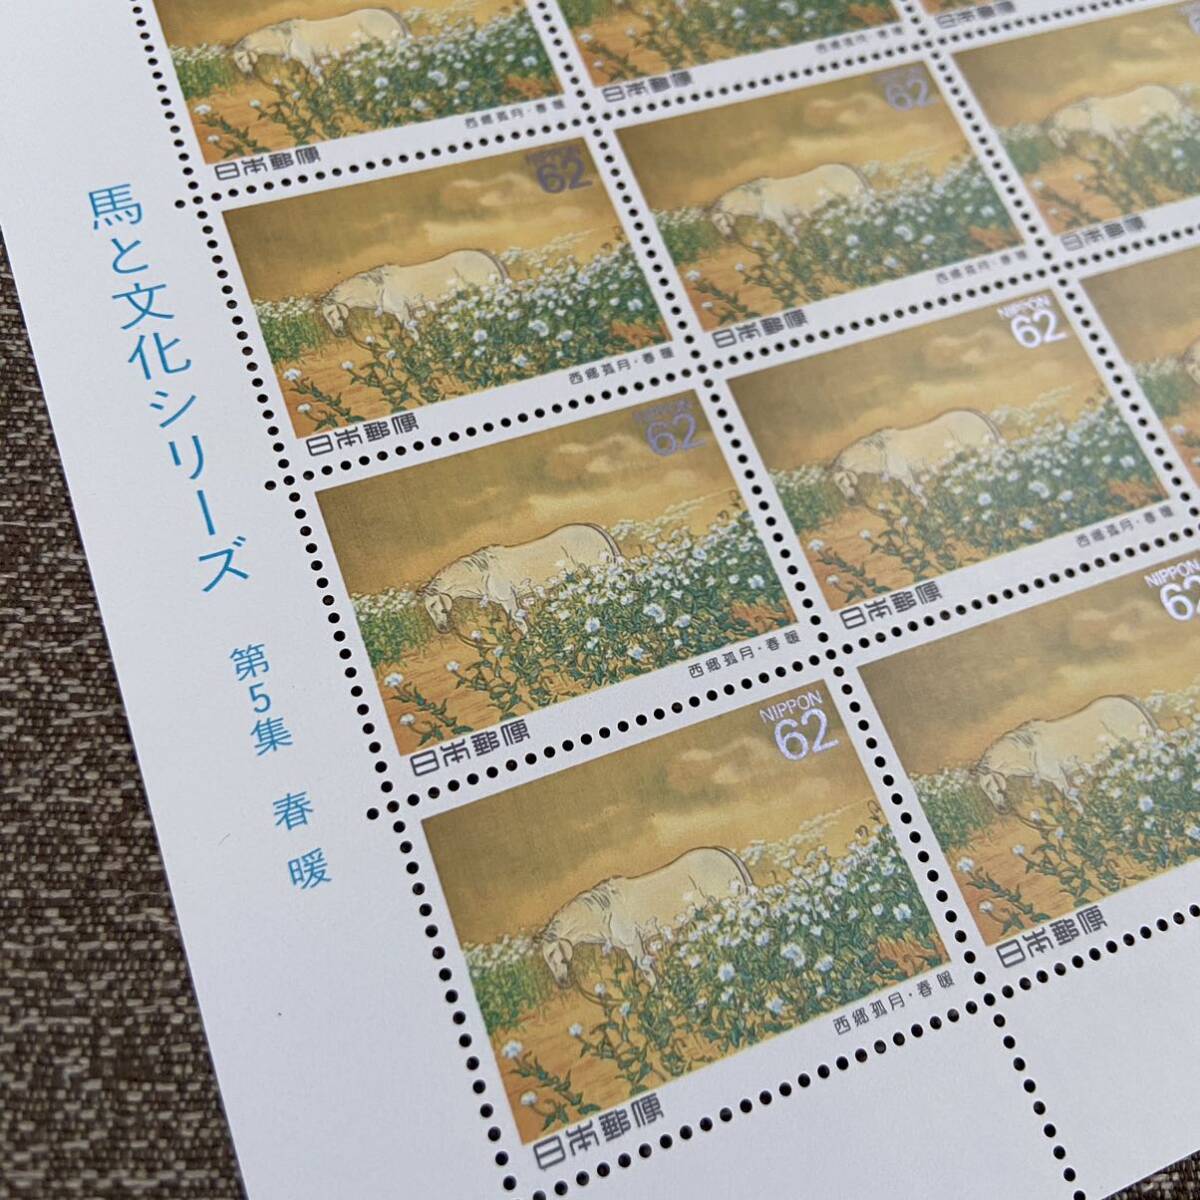  юбилейная марка * марка Uma to Bunka серии сиденье 62 иен марка no. 5 сборник [ весна .] Япония mail коллекция лошадь 